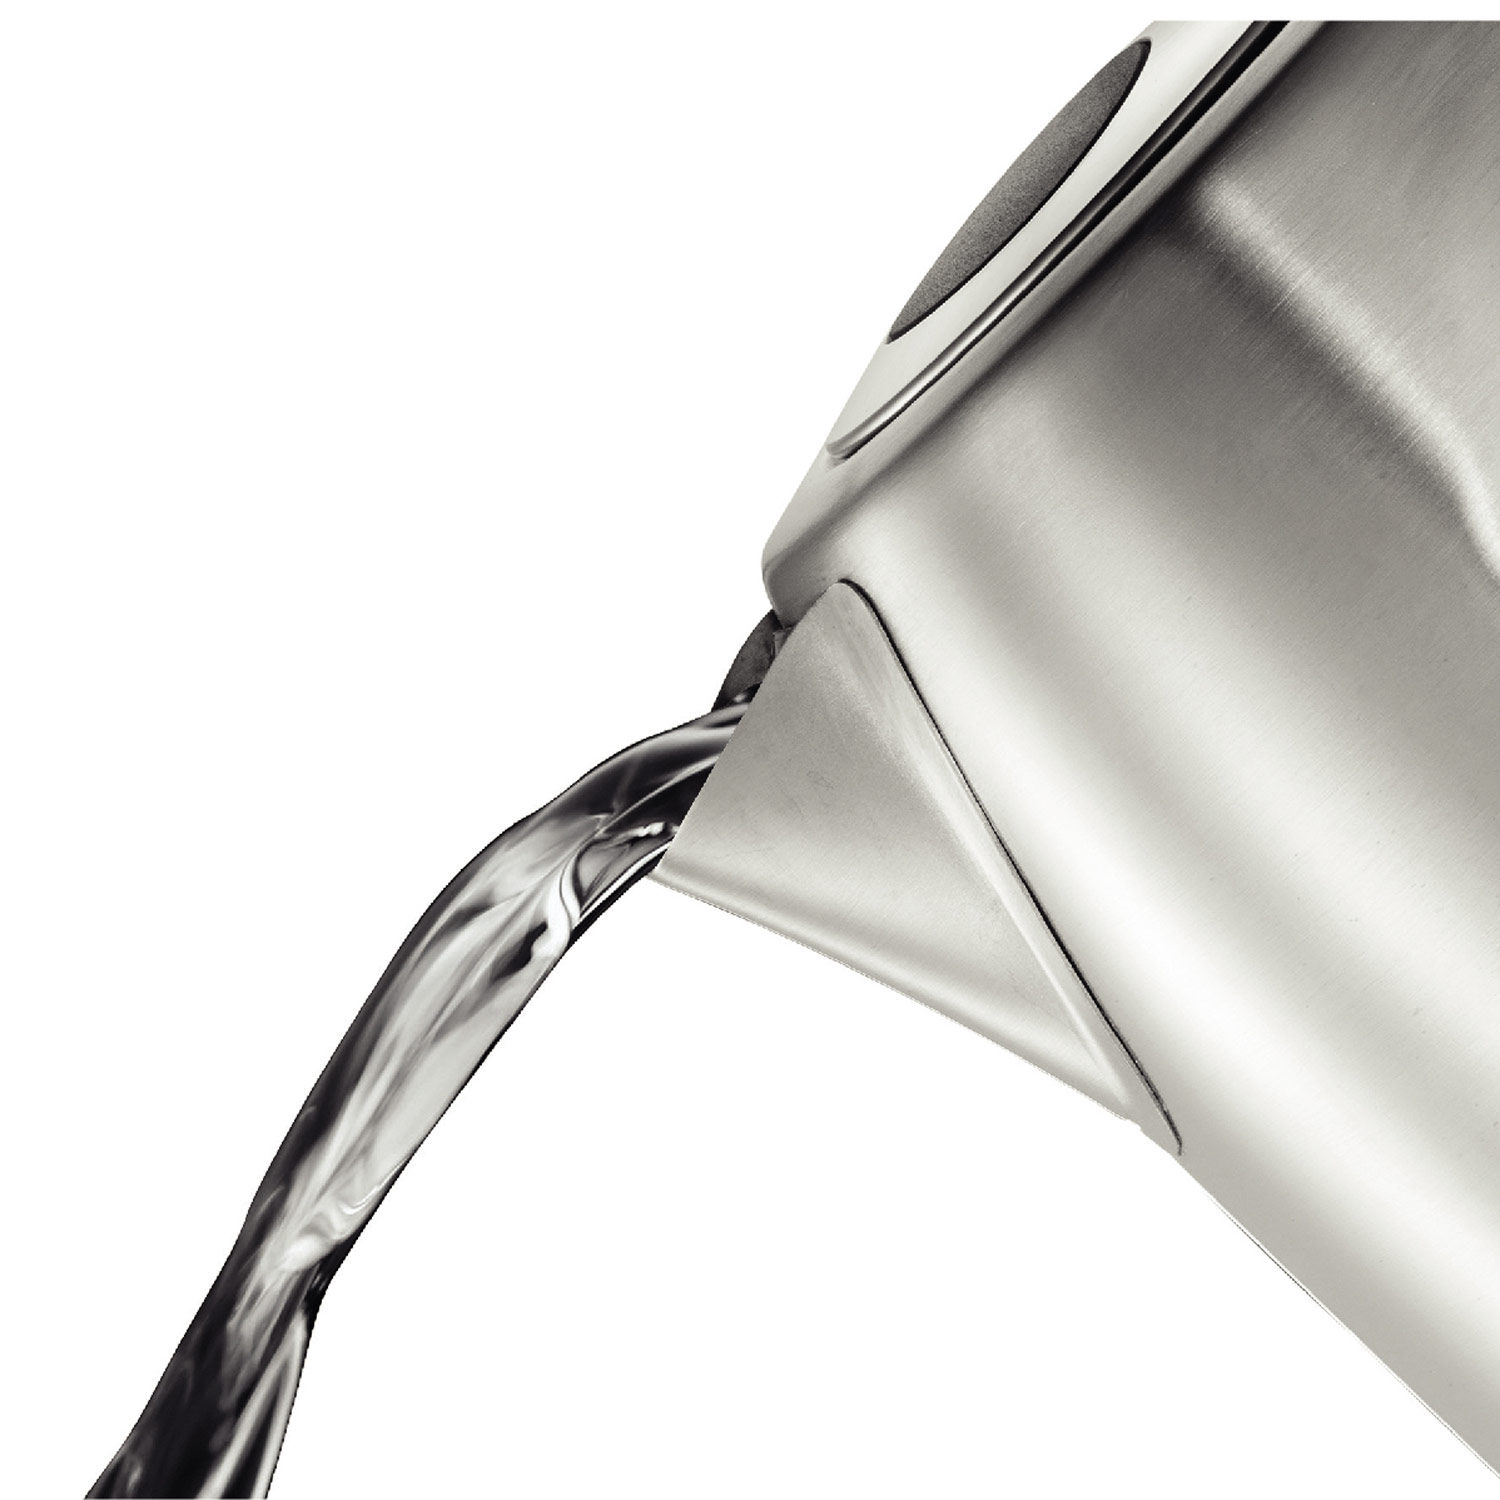 RUSSELL HOBBS Wasserkocher 26300-70 Wasserkocher Silber 1.7l Wasserkocher, Leiser